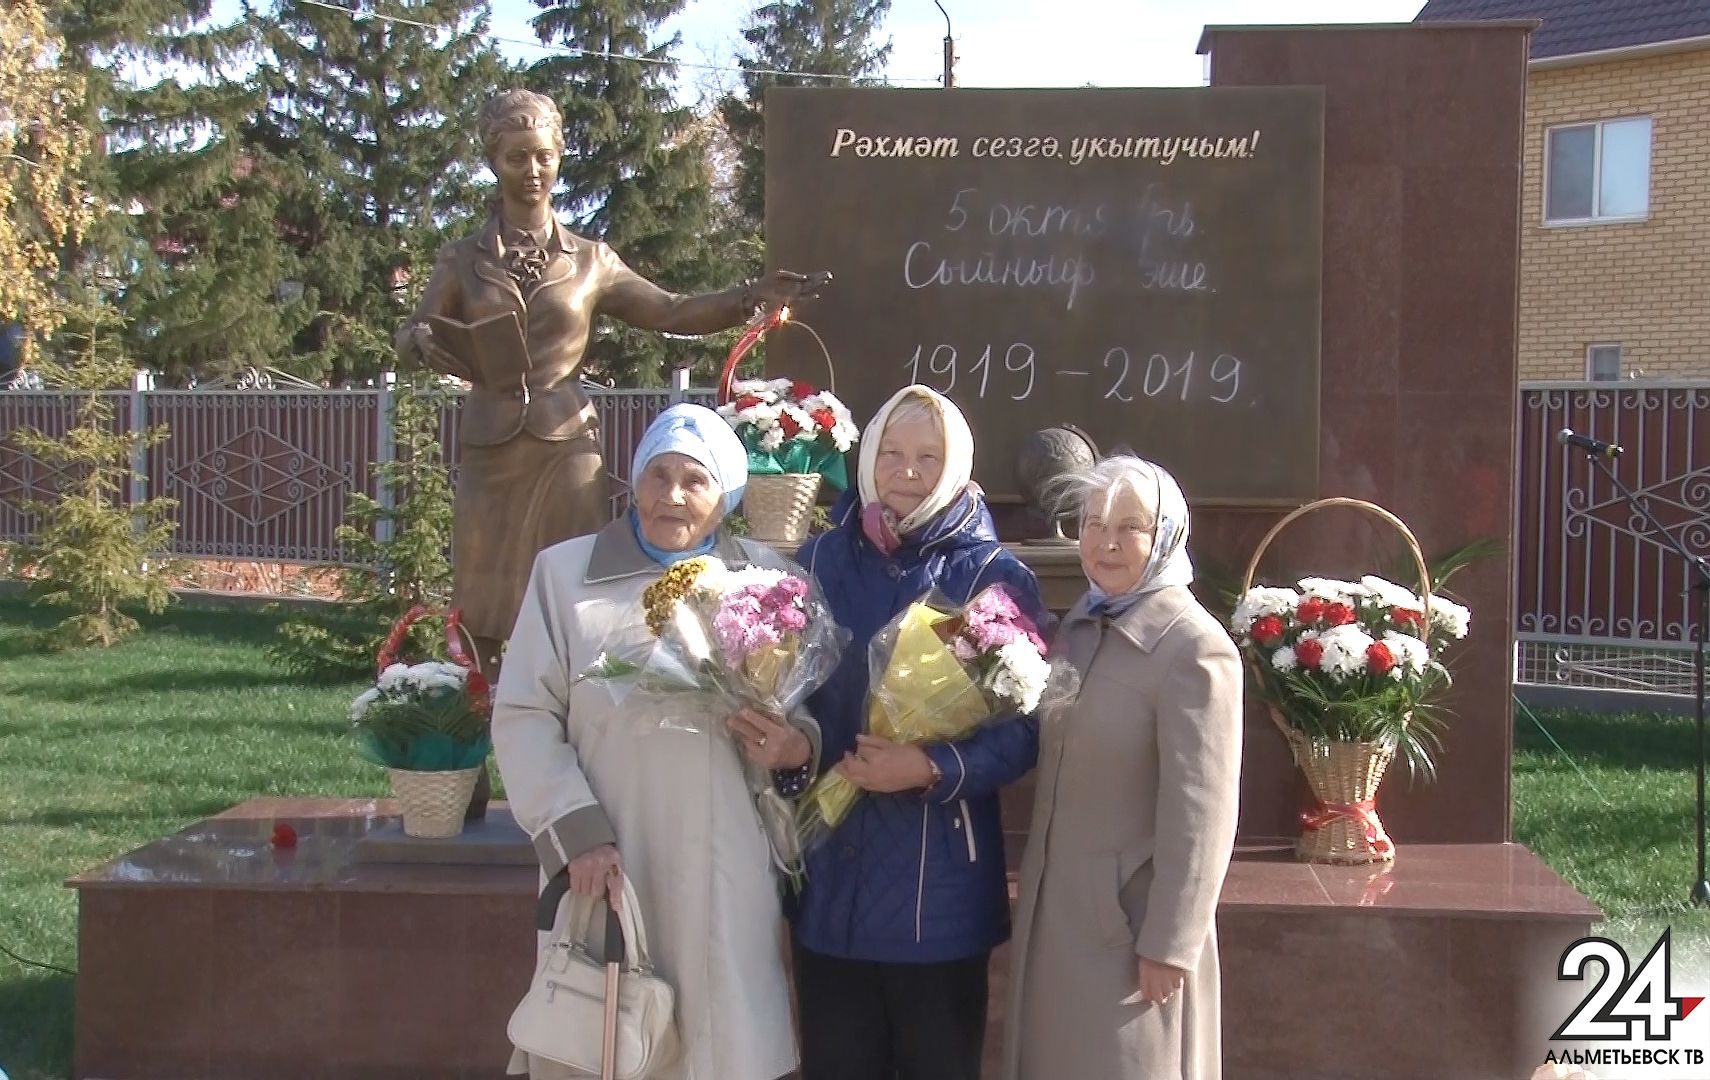 Парк учителей и мемориал педагогам появился в Альметьевском районе